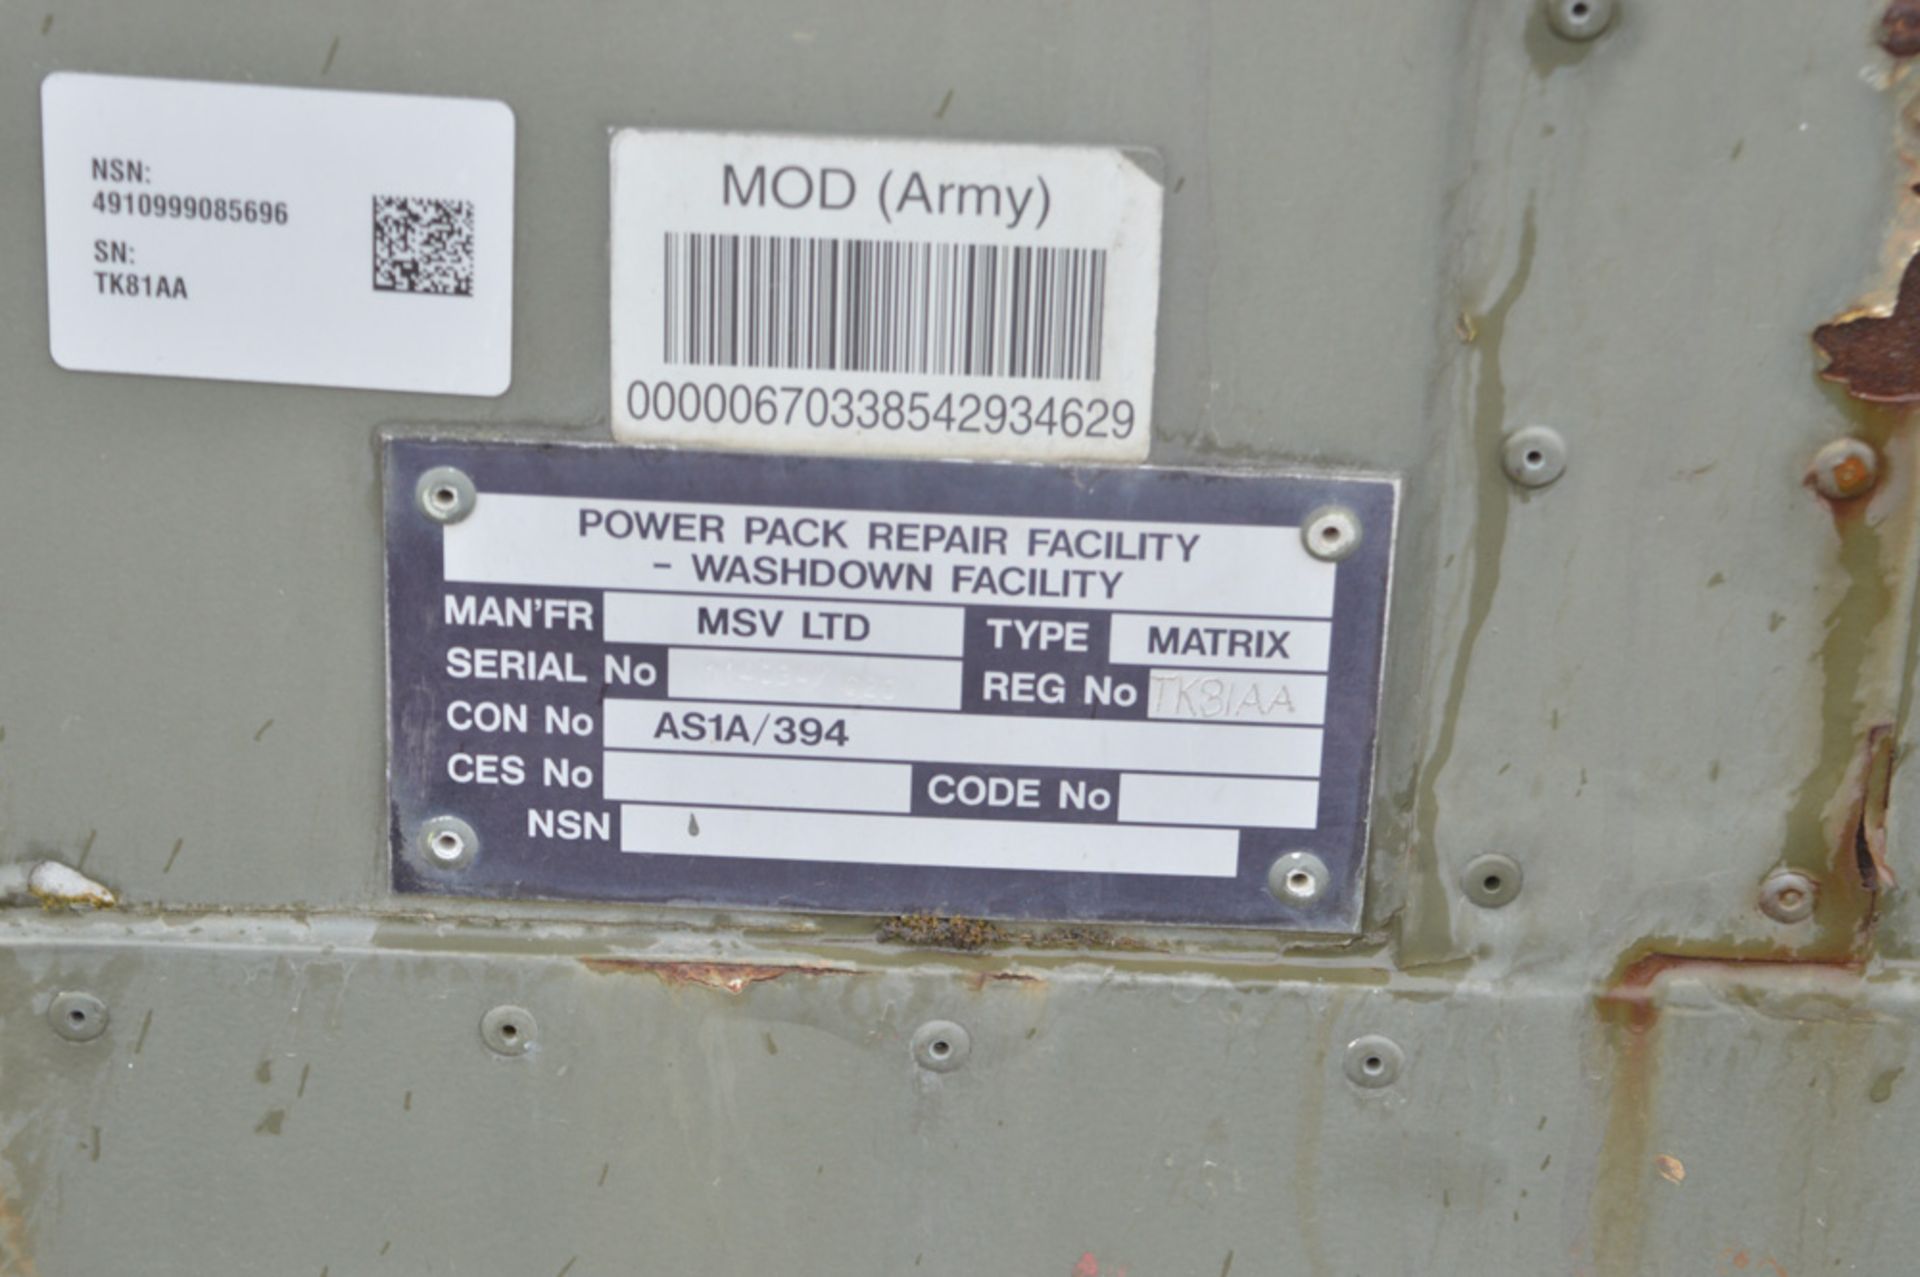 20 ft x 8 ft MSV Matrix hook loader wash down site unit (Ex MOD) TK81AA - Image 8 of 8